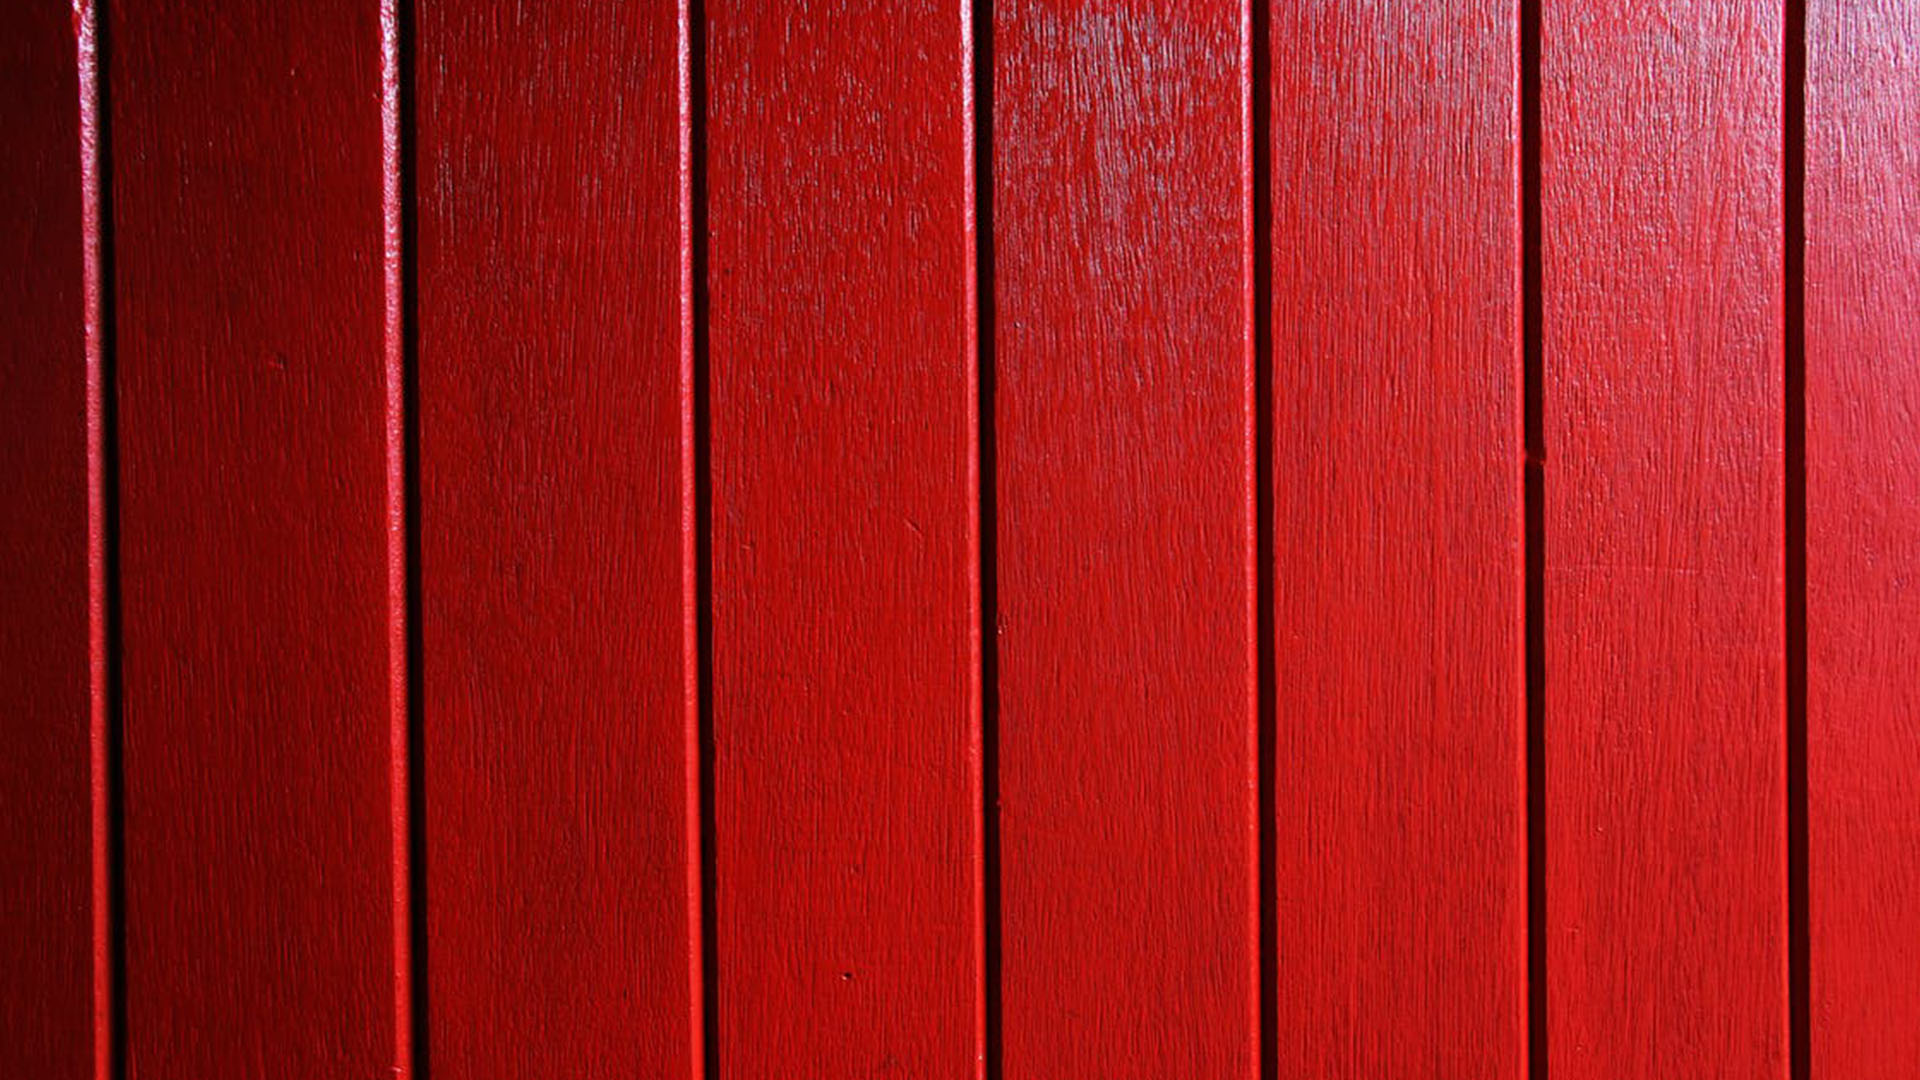 Hình nền gỗ đỏ